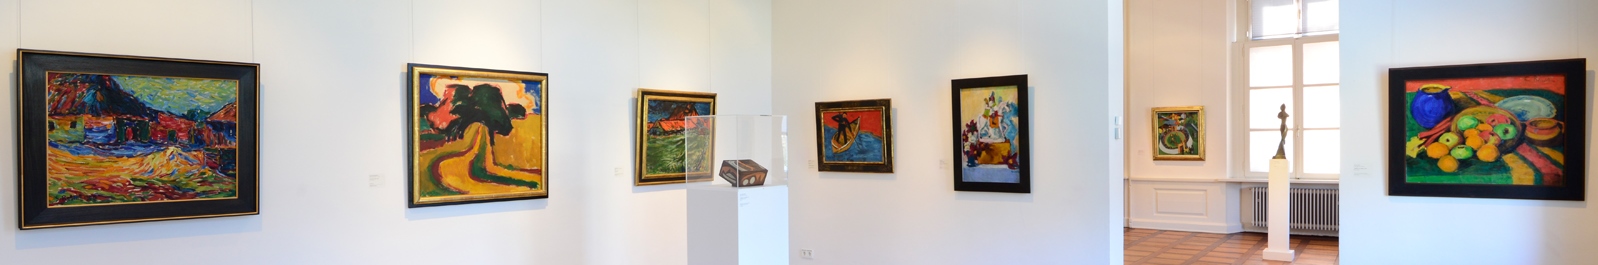 Blick in den Ausstellungsraum mit Werken des Deutschen Expressionismus, Landesmuseum für Kunst und Kulturgeschichte Oldenburg